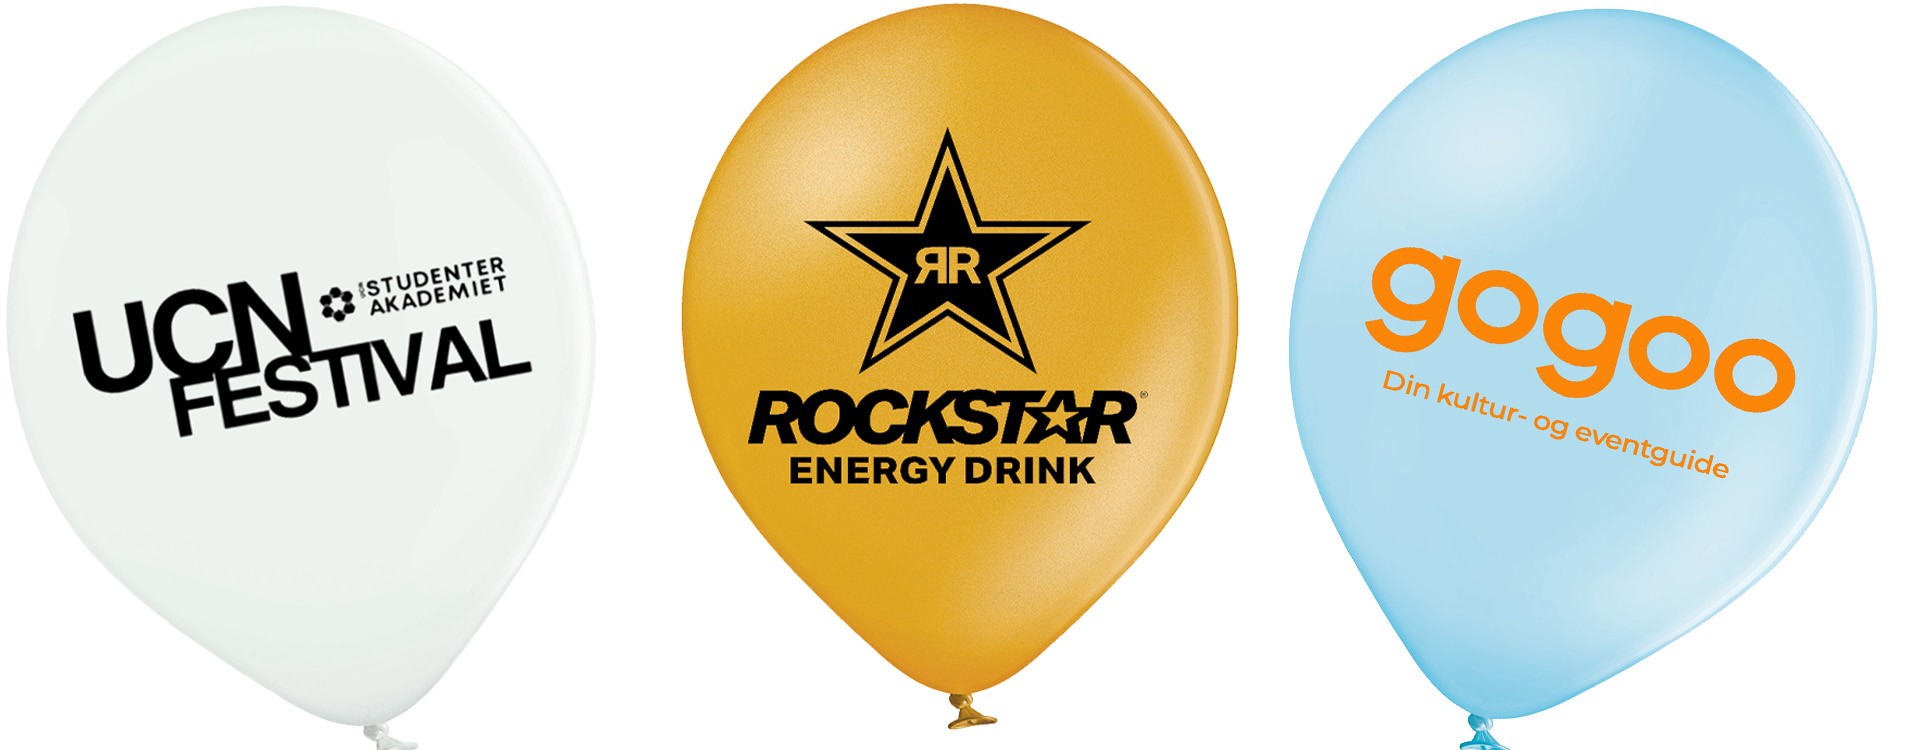 Reklameballoner og balloner med eget logo